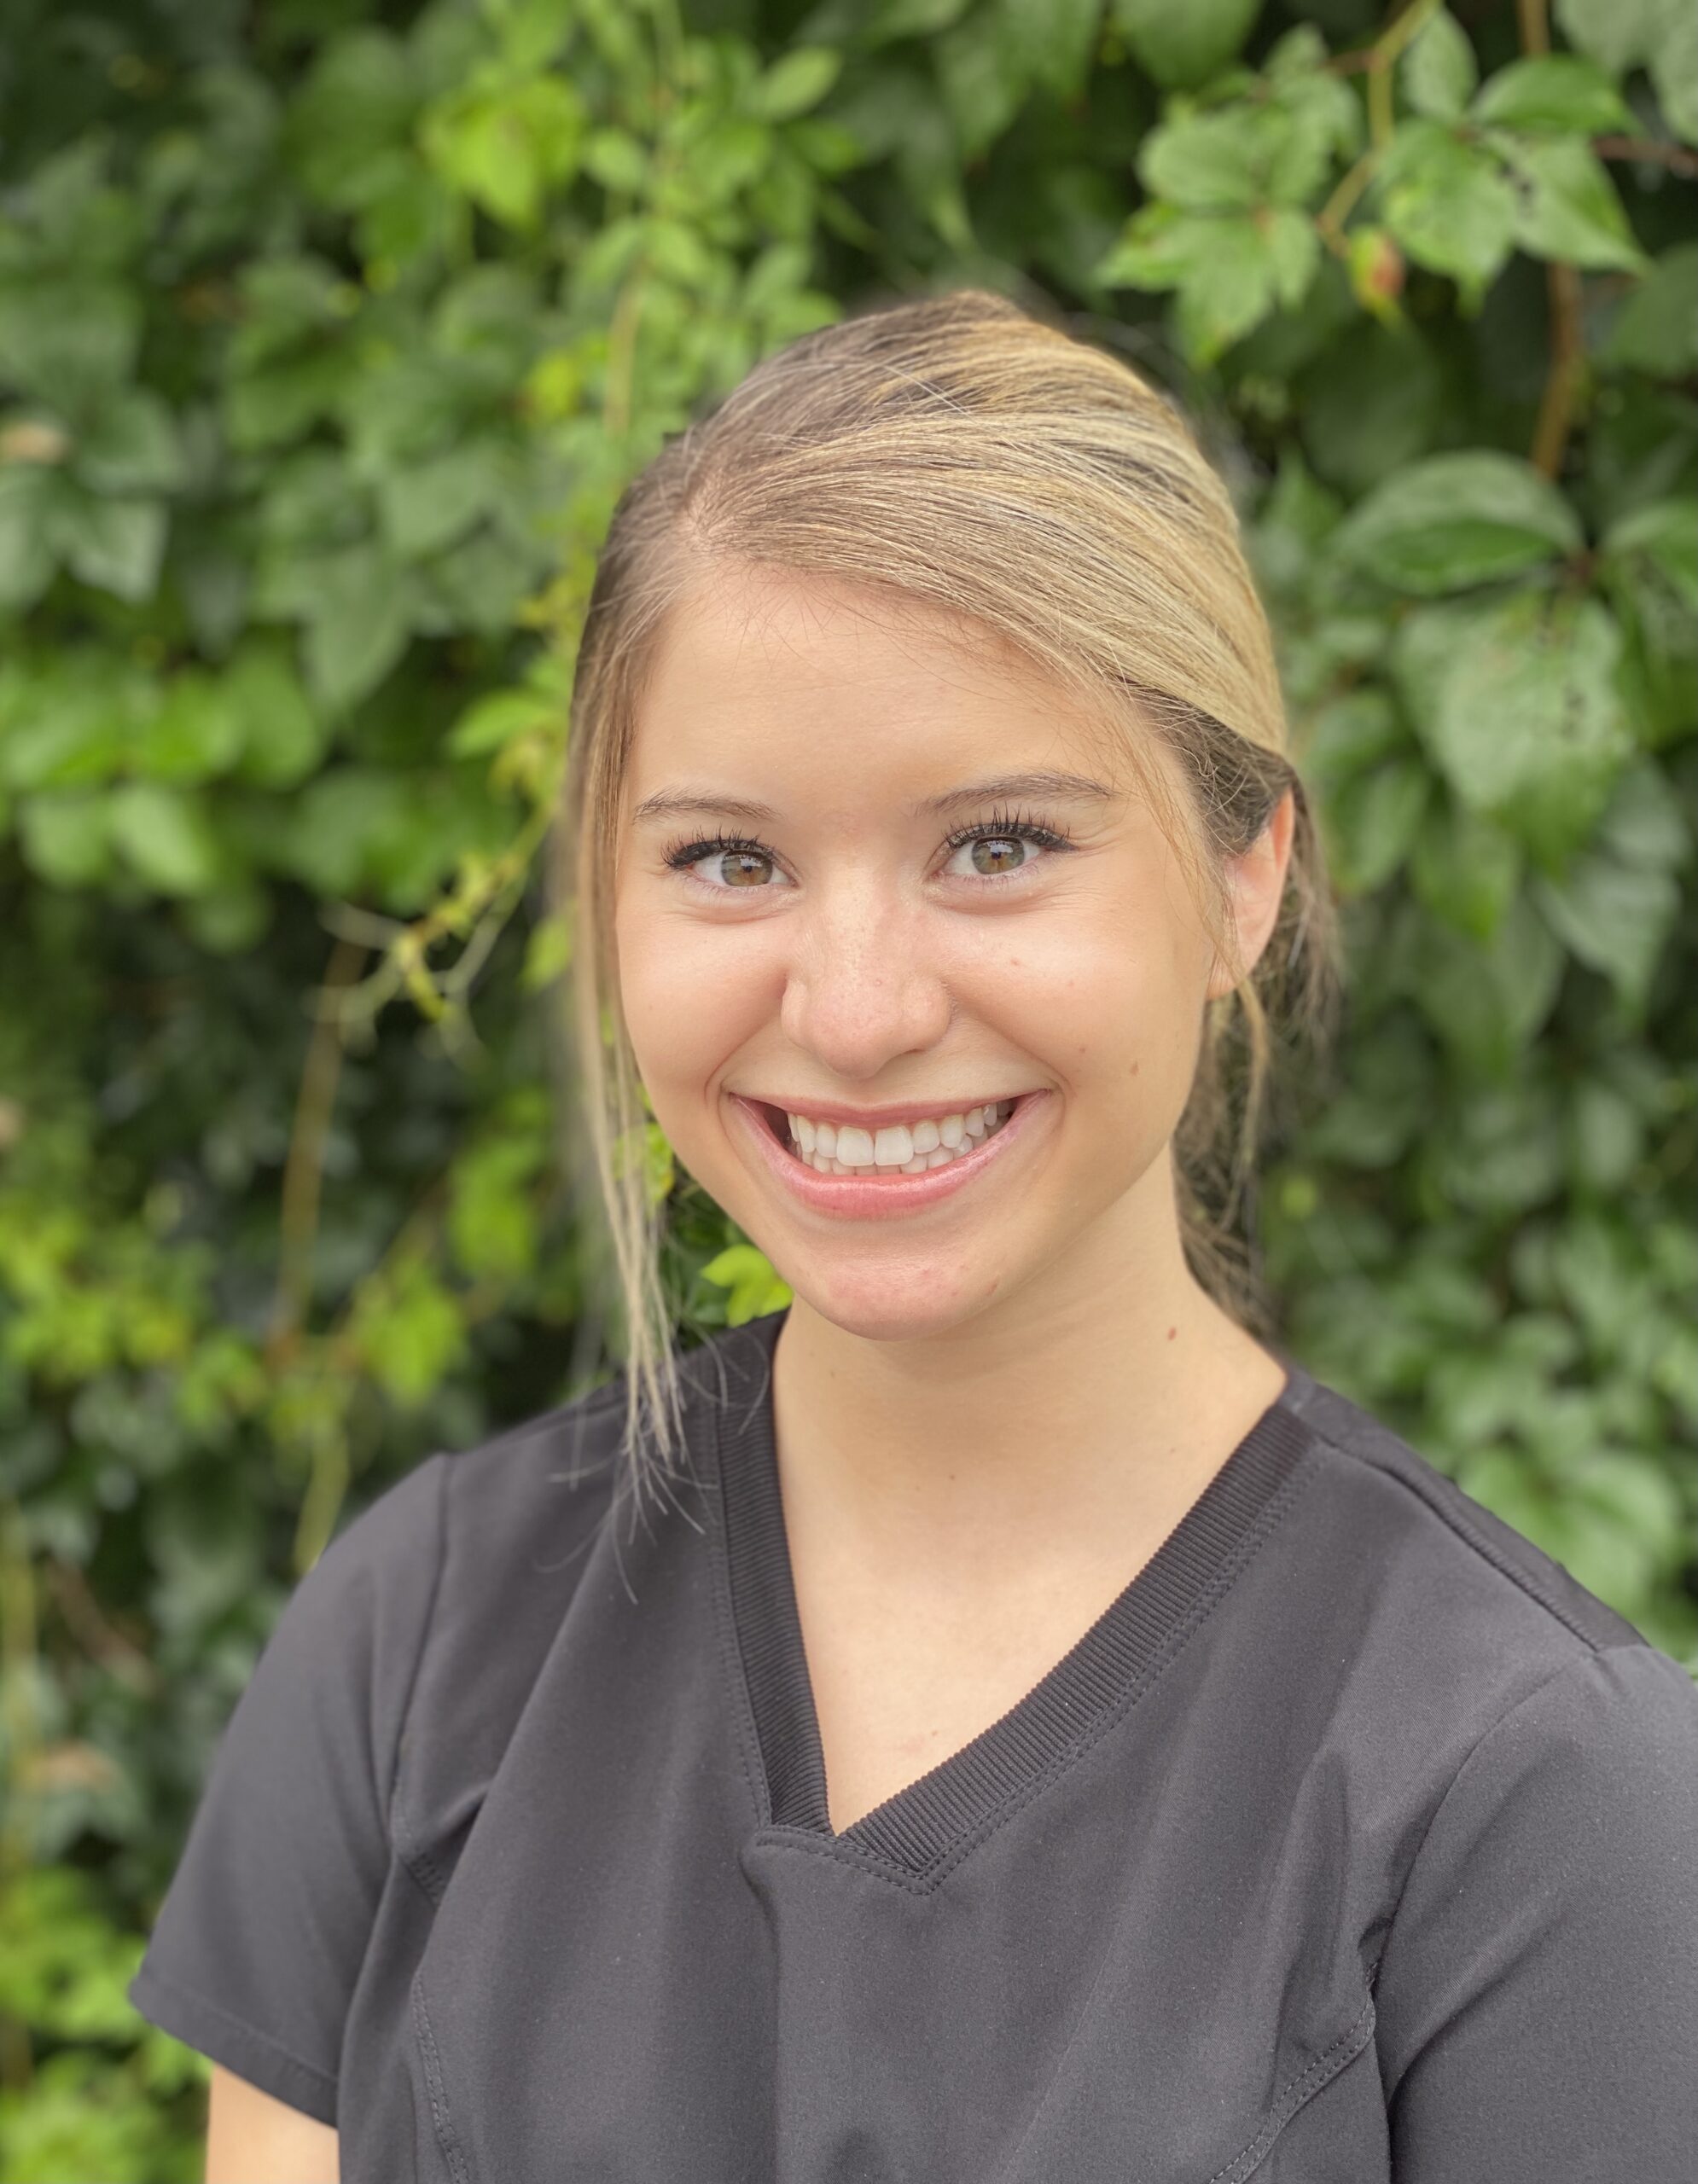 Celina - Registered Dental Hygienist